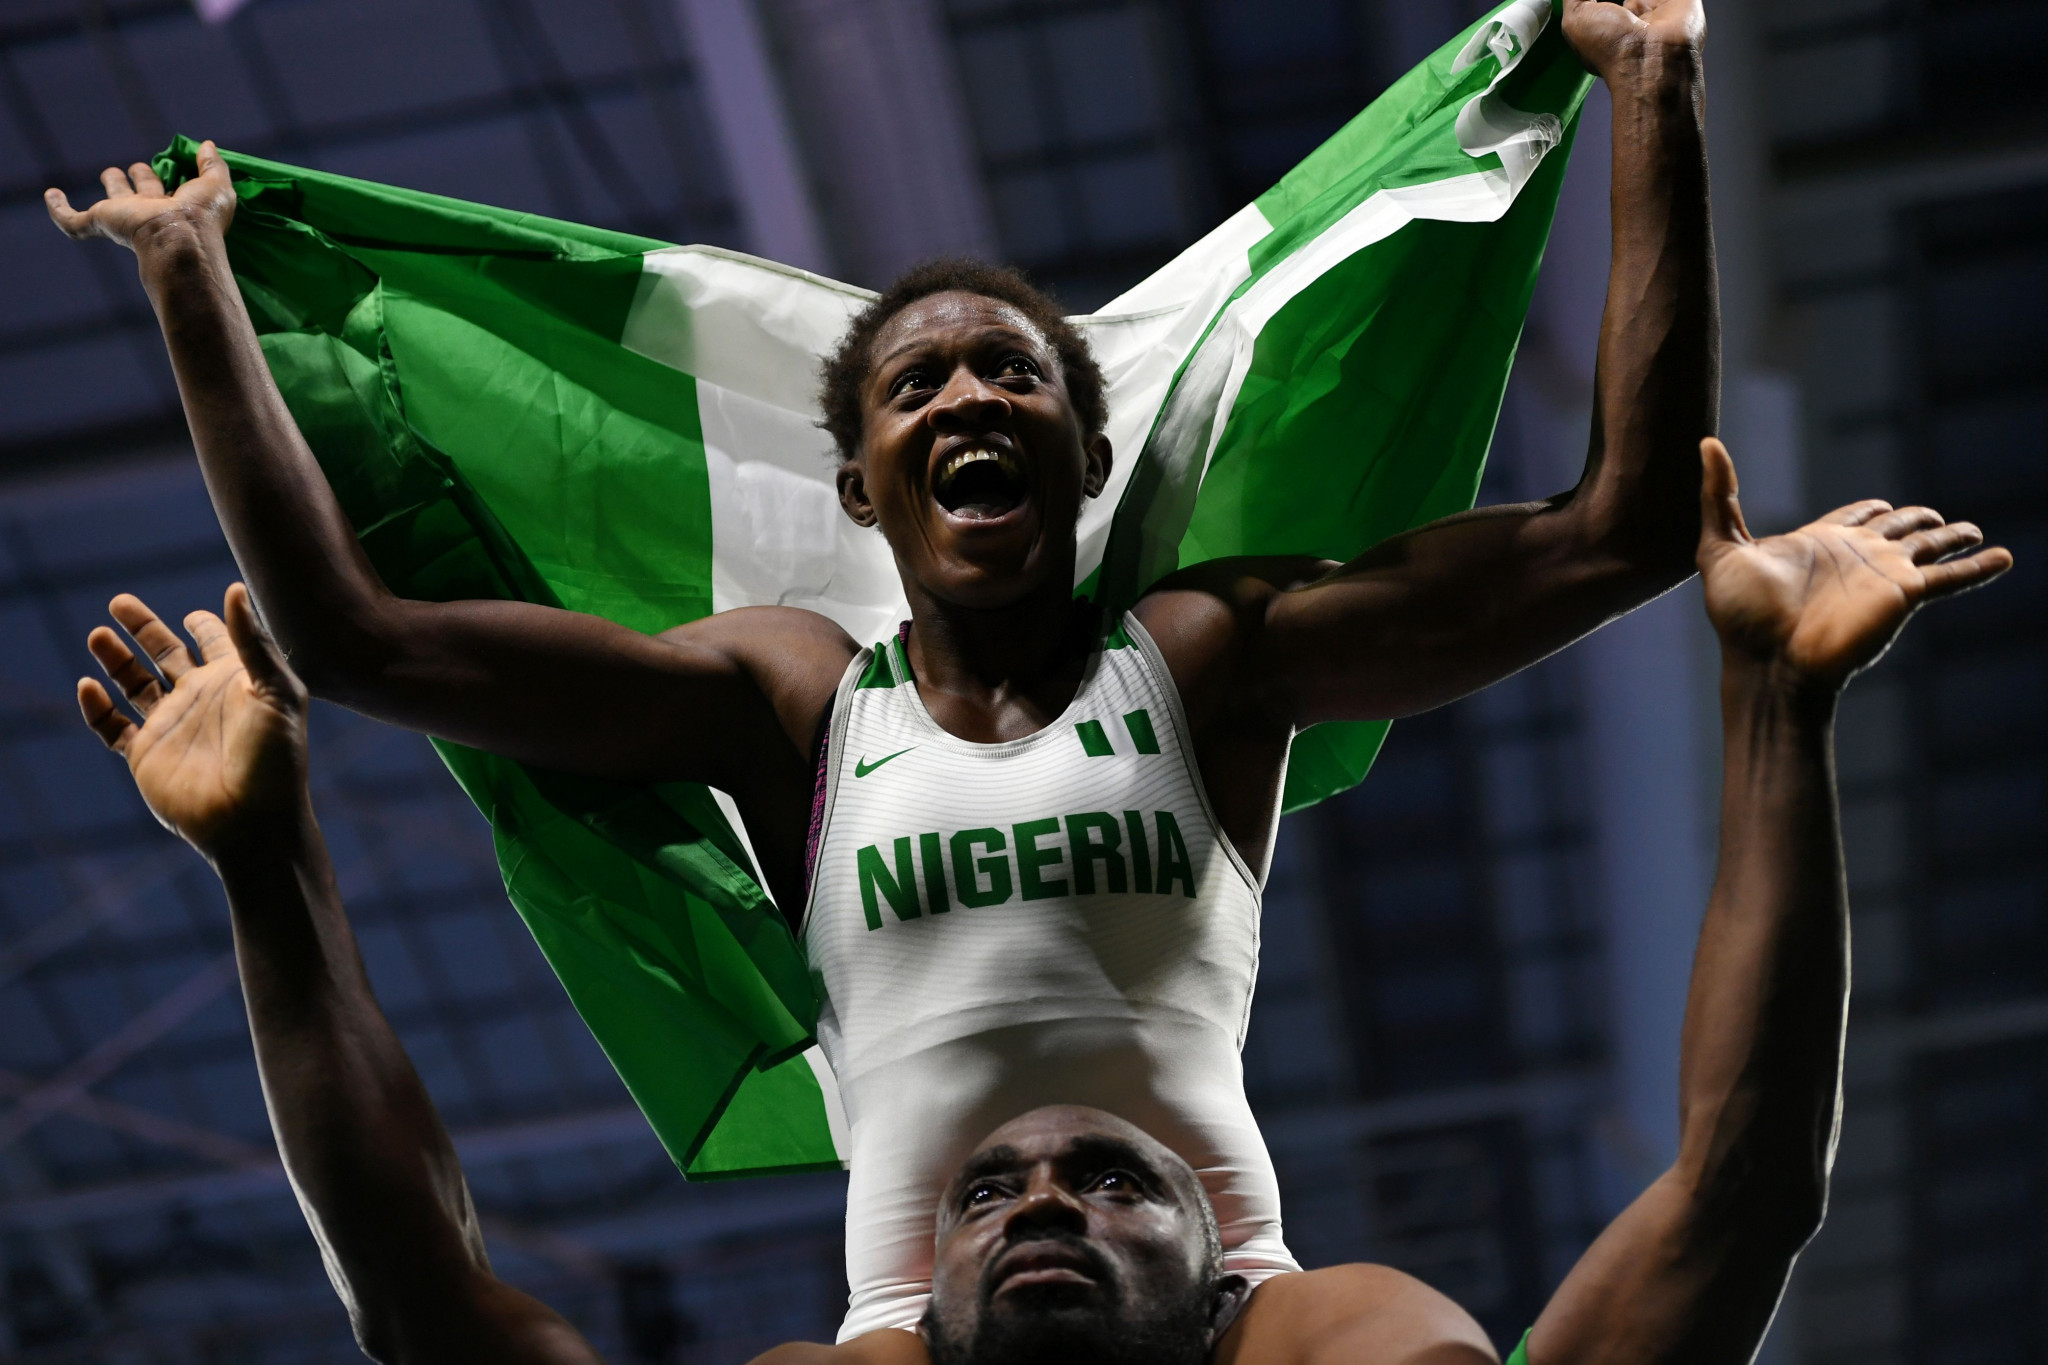 Nigeria's Odunayo Adekuoroye will be vying for glory in Dormagen ©Getty Images